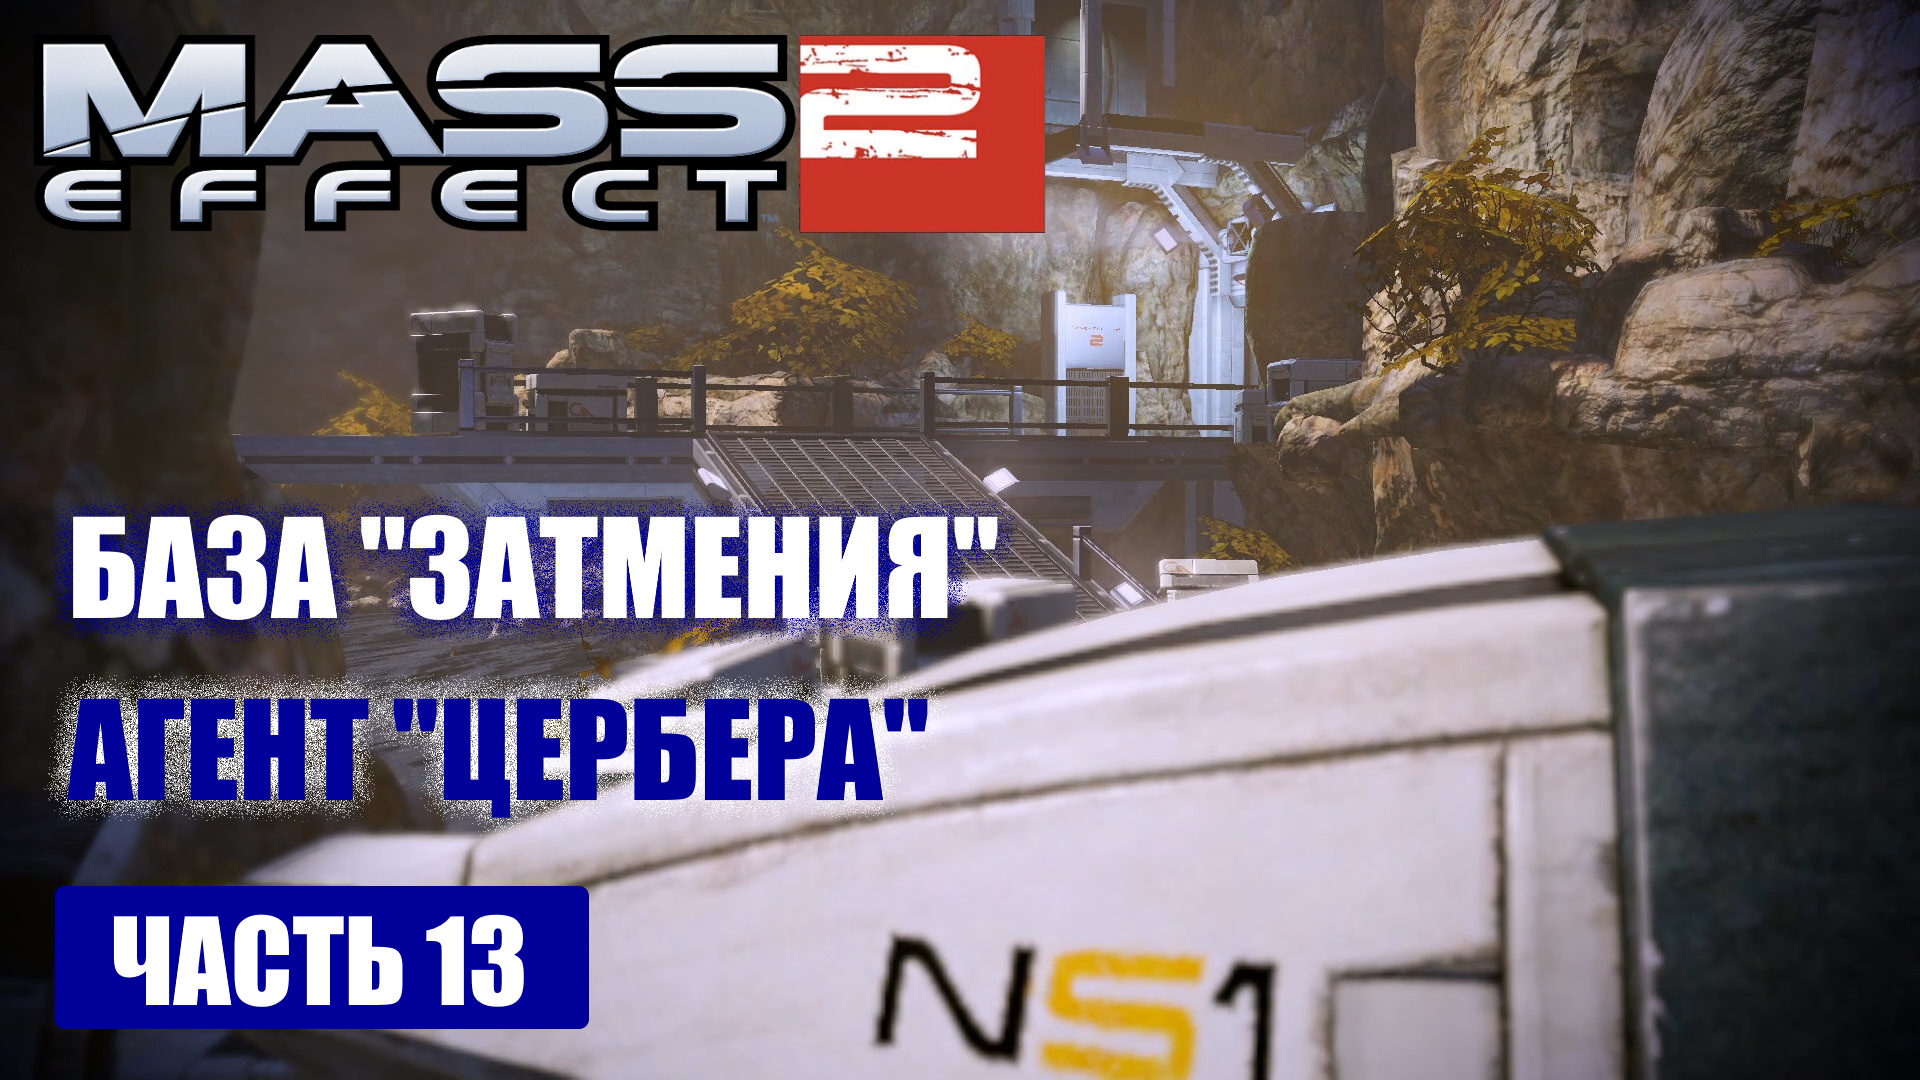 Mass Effect 2 прохождение - БАЗА "ЗАТМЕНИЯ", ПРОПАВШИЙ ОПЕРАТИВНИК "ЦЕРБЕРА" (русская озвучка) #13